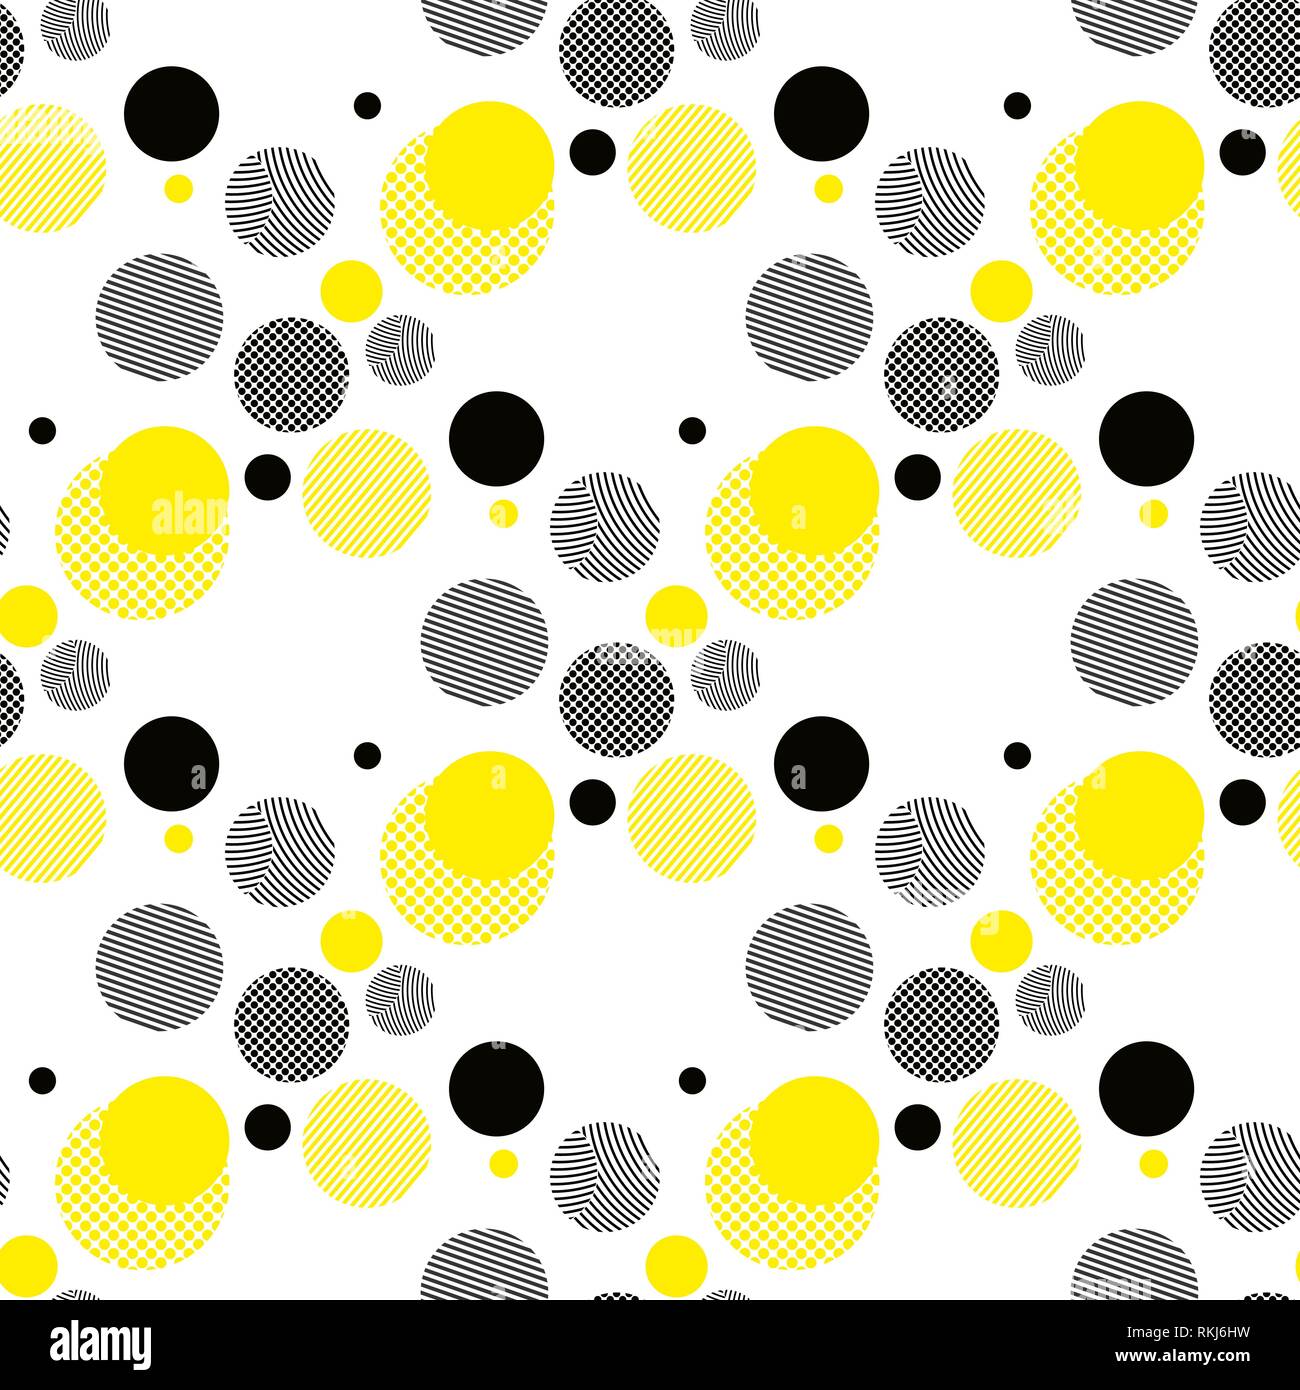 Die nahtlose Vektor geometrische Muster. Universal Wiederholen abstract Kreise Abbildung in Schwarz, Weiß und Gelb. Moderne Kreis Design, pointillismus Eps 10. Stock Vektor